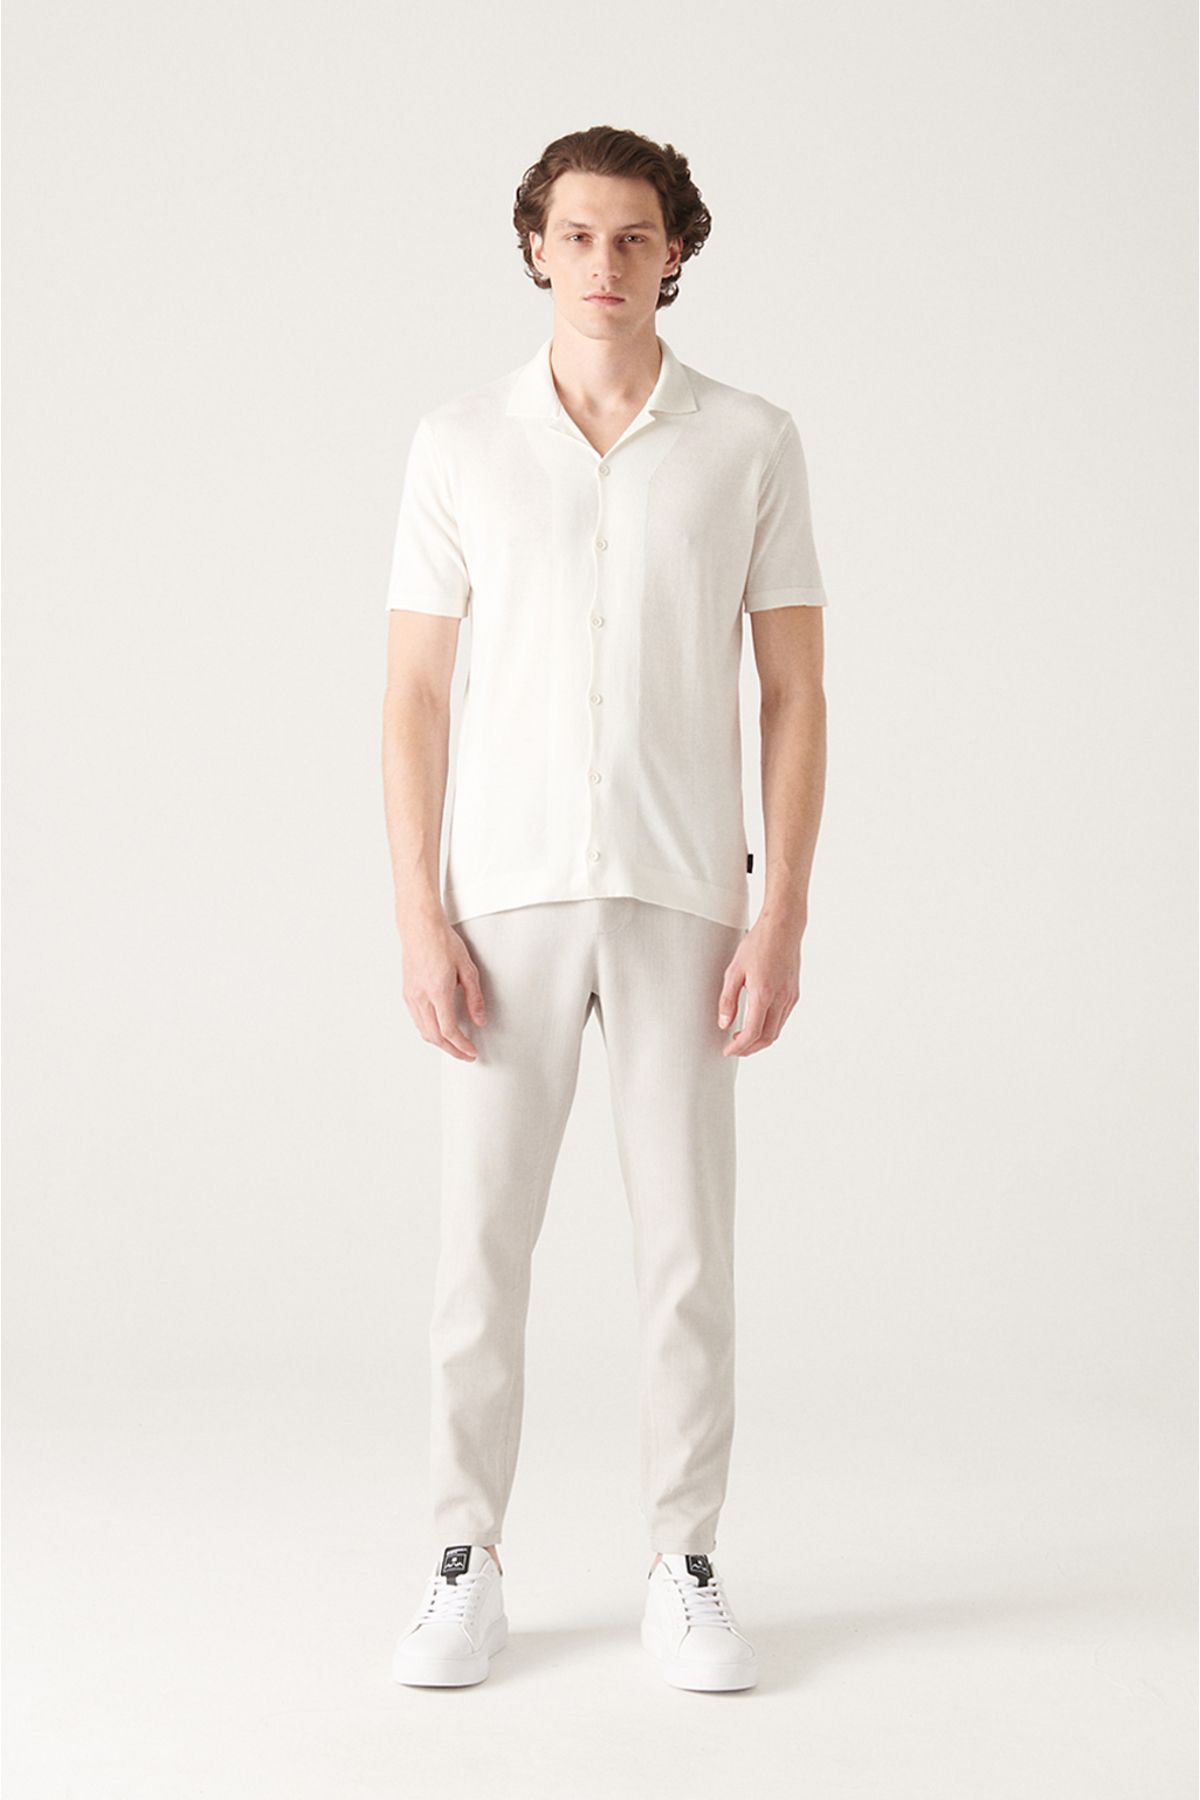 Avva تی شرت بافتنی مردانه یقه سفید کوبایی با دکمه های استاندارد متناسب برش معمولی B005008